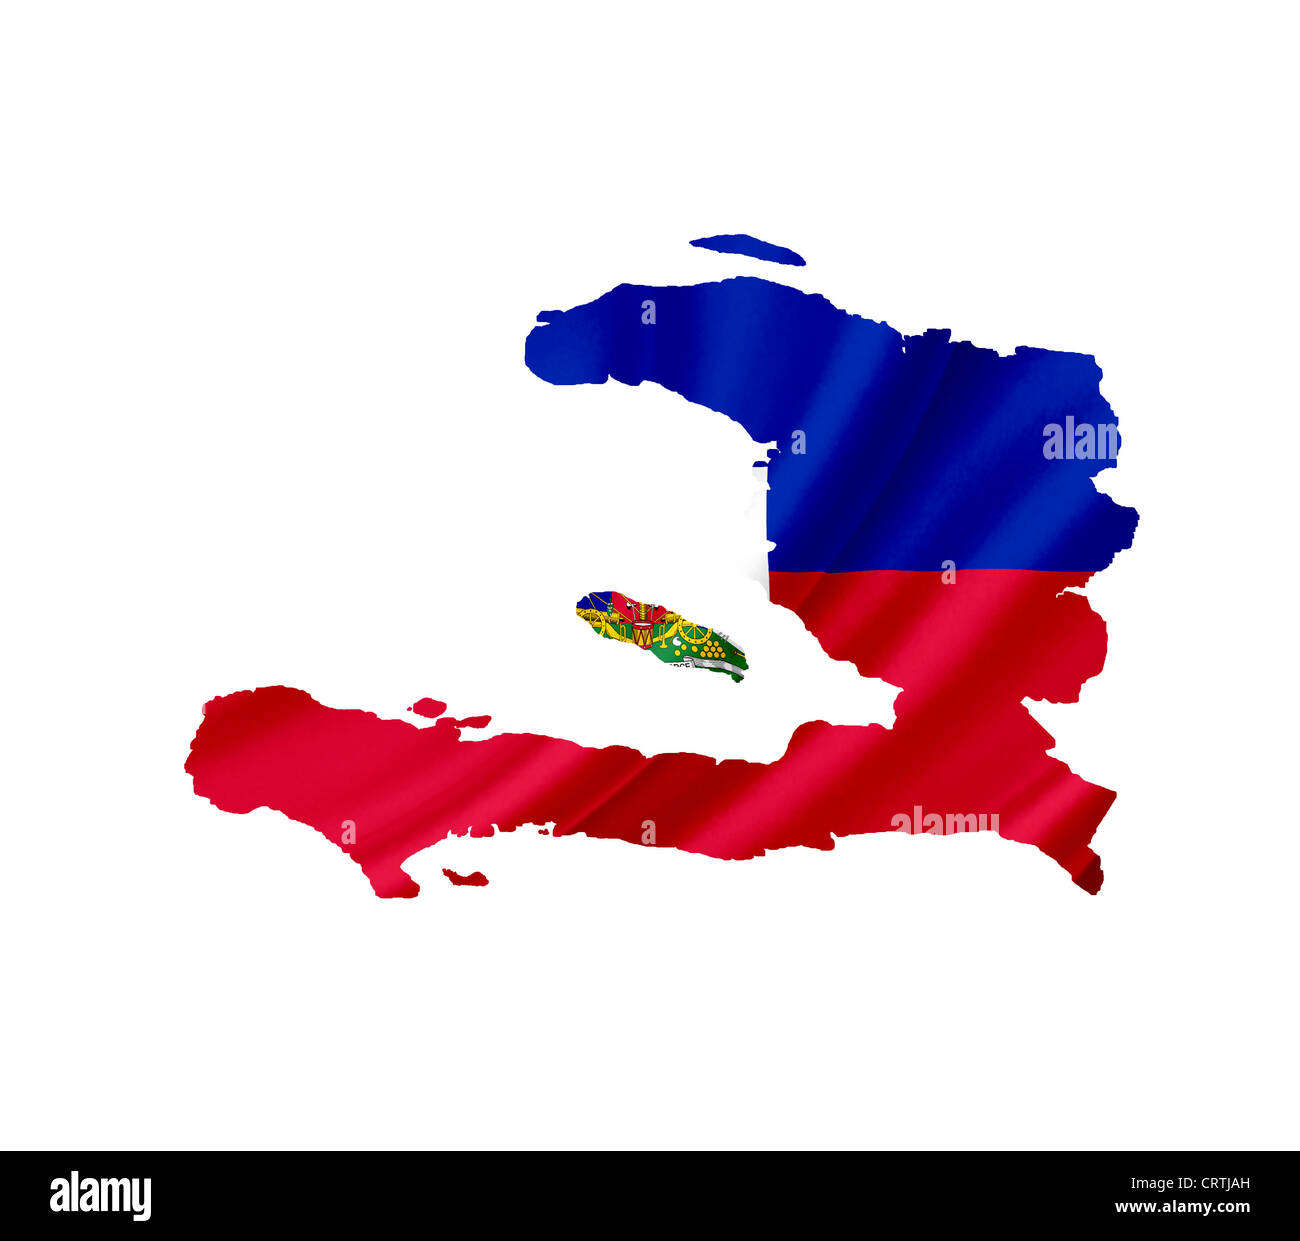 La carte d'Haïti avec waving flag isolated on white Banque D'Images